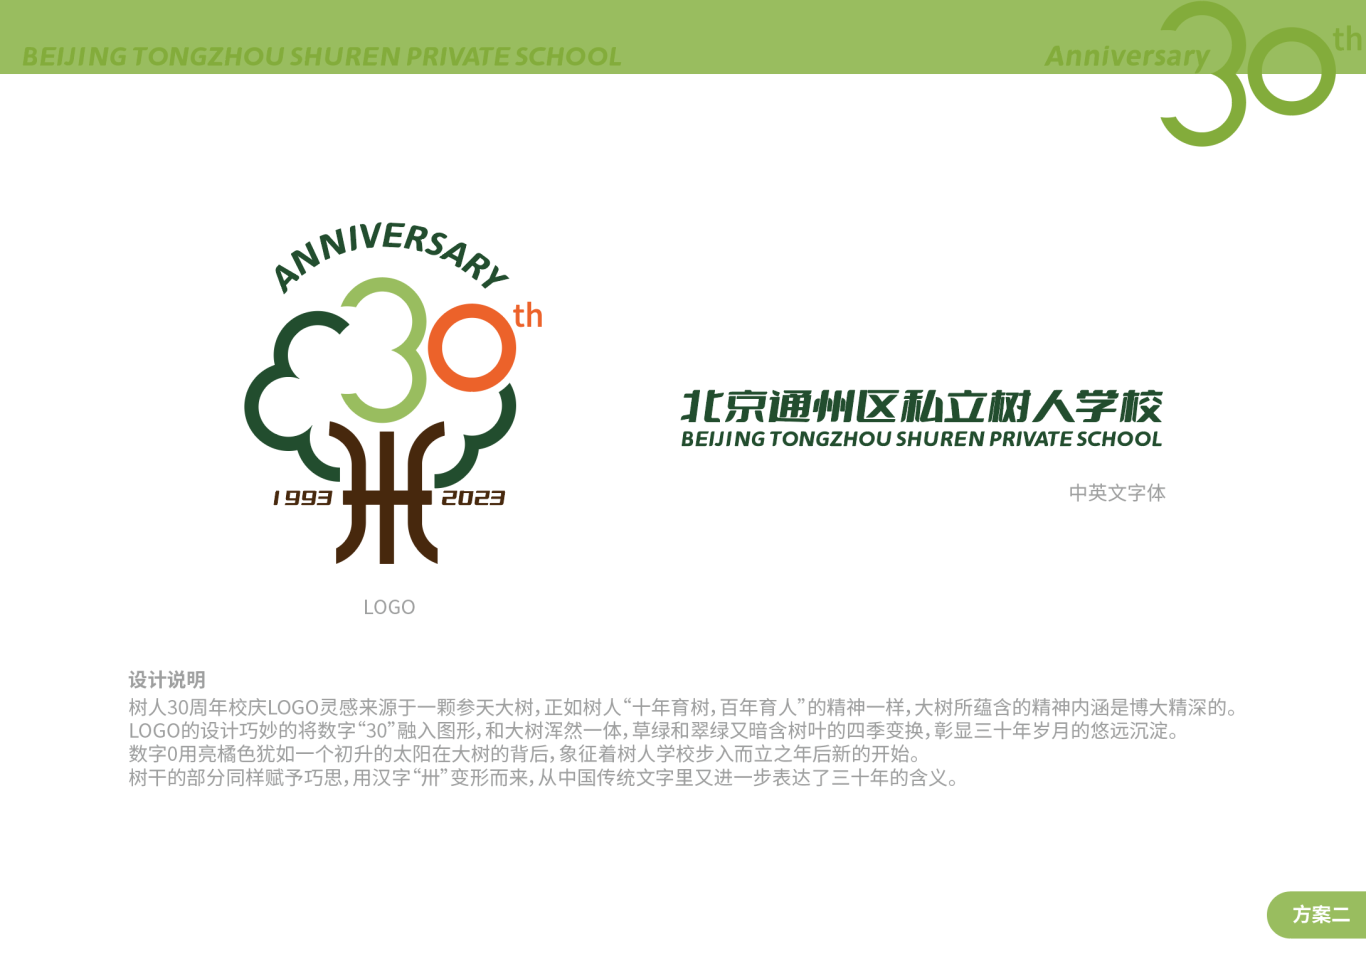 北京通州区私立树人学校30周年校庆logo图2